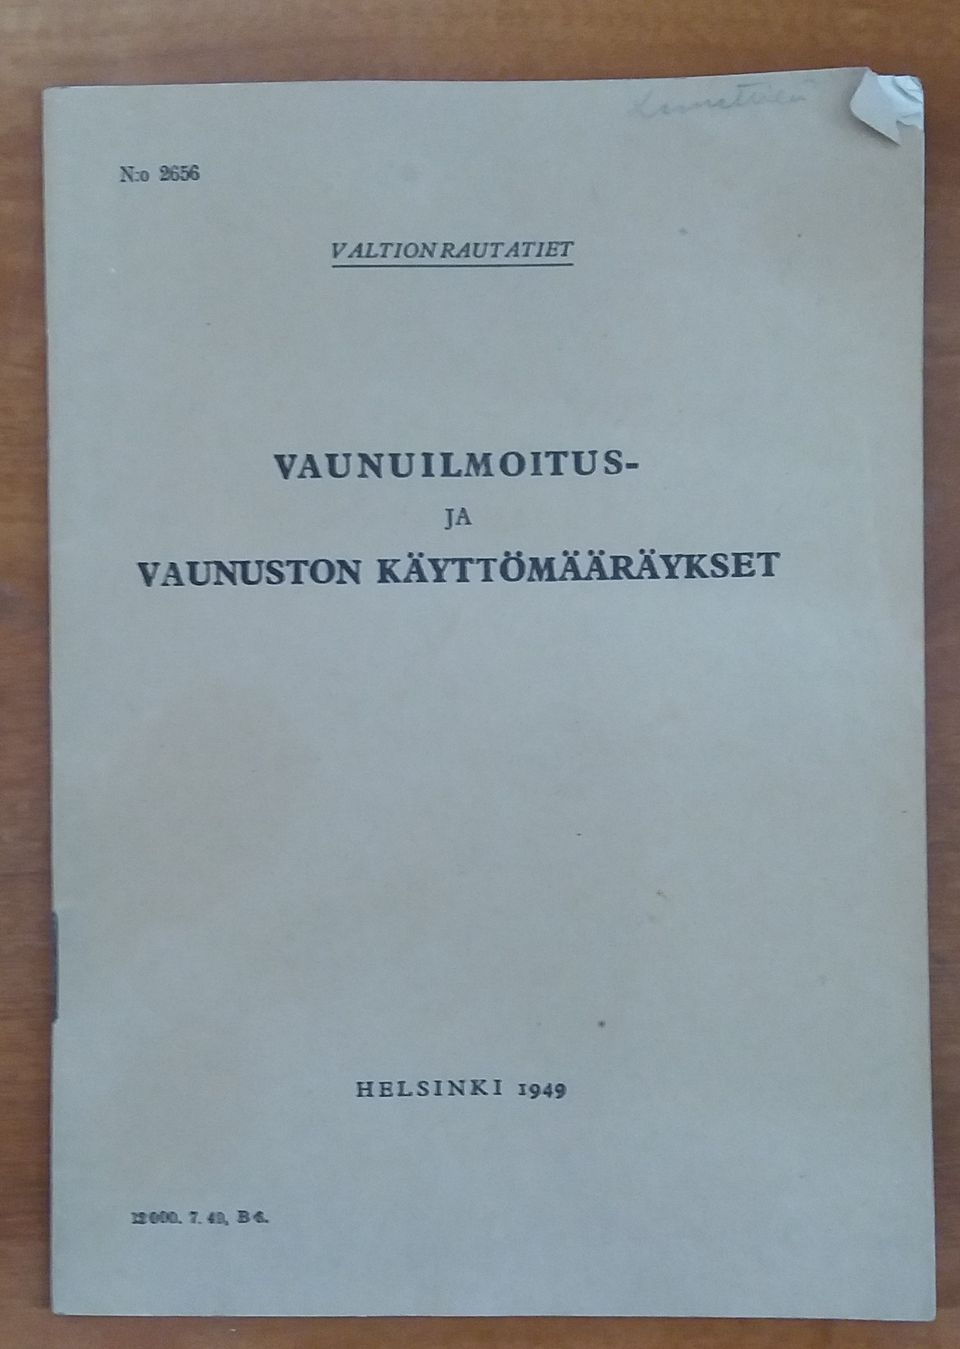 Valtionrautatiet Vaunuilmoitus- ja vaunuston käyttömääräykset v. 1949